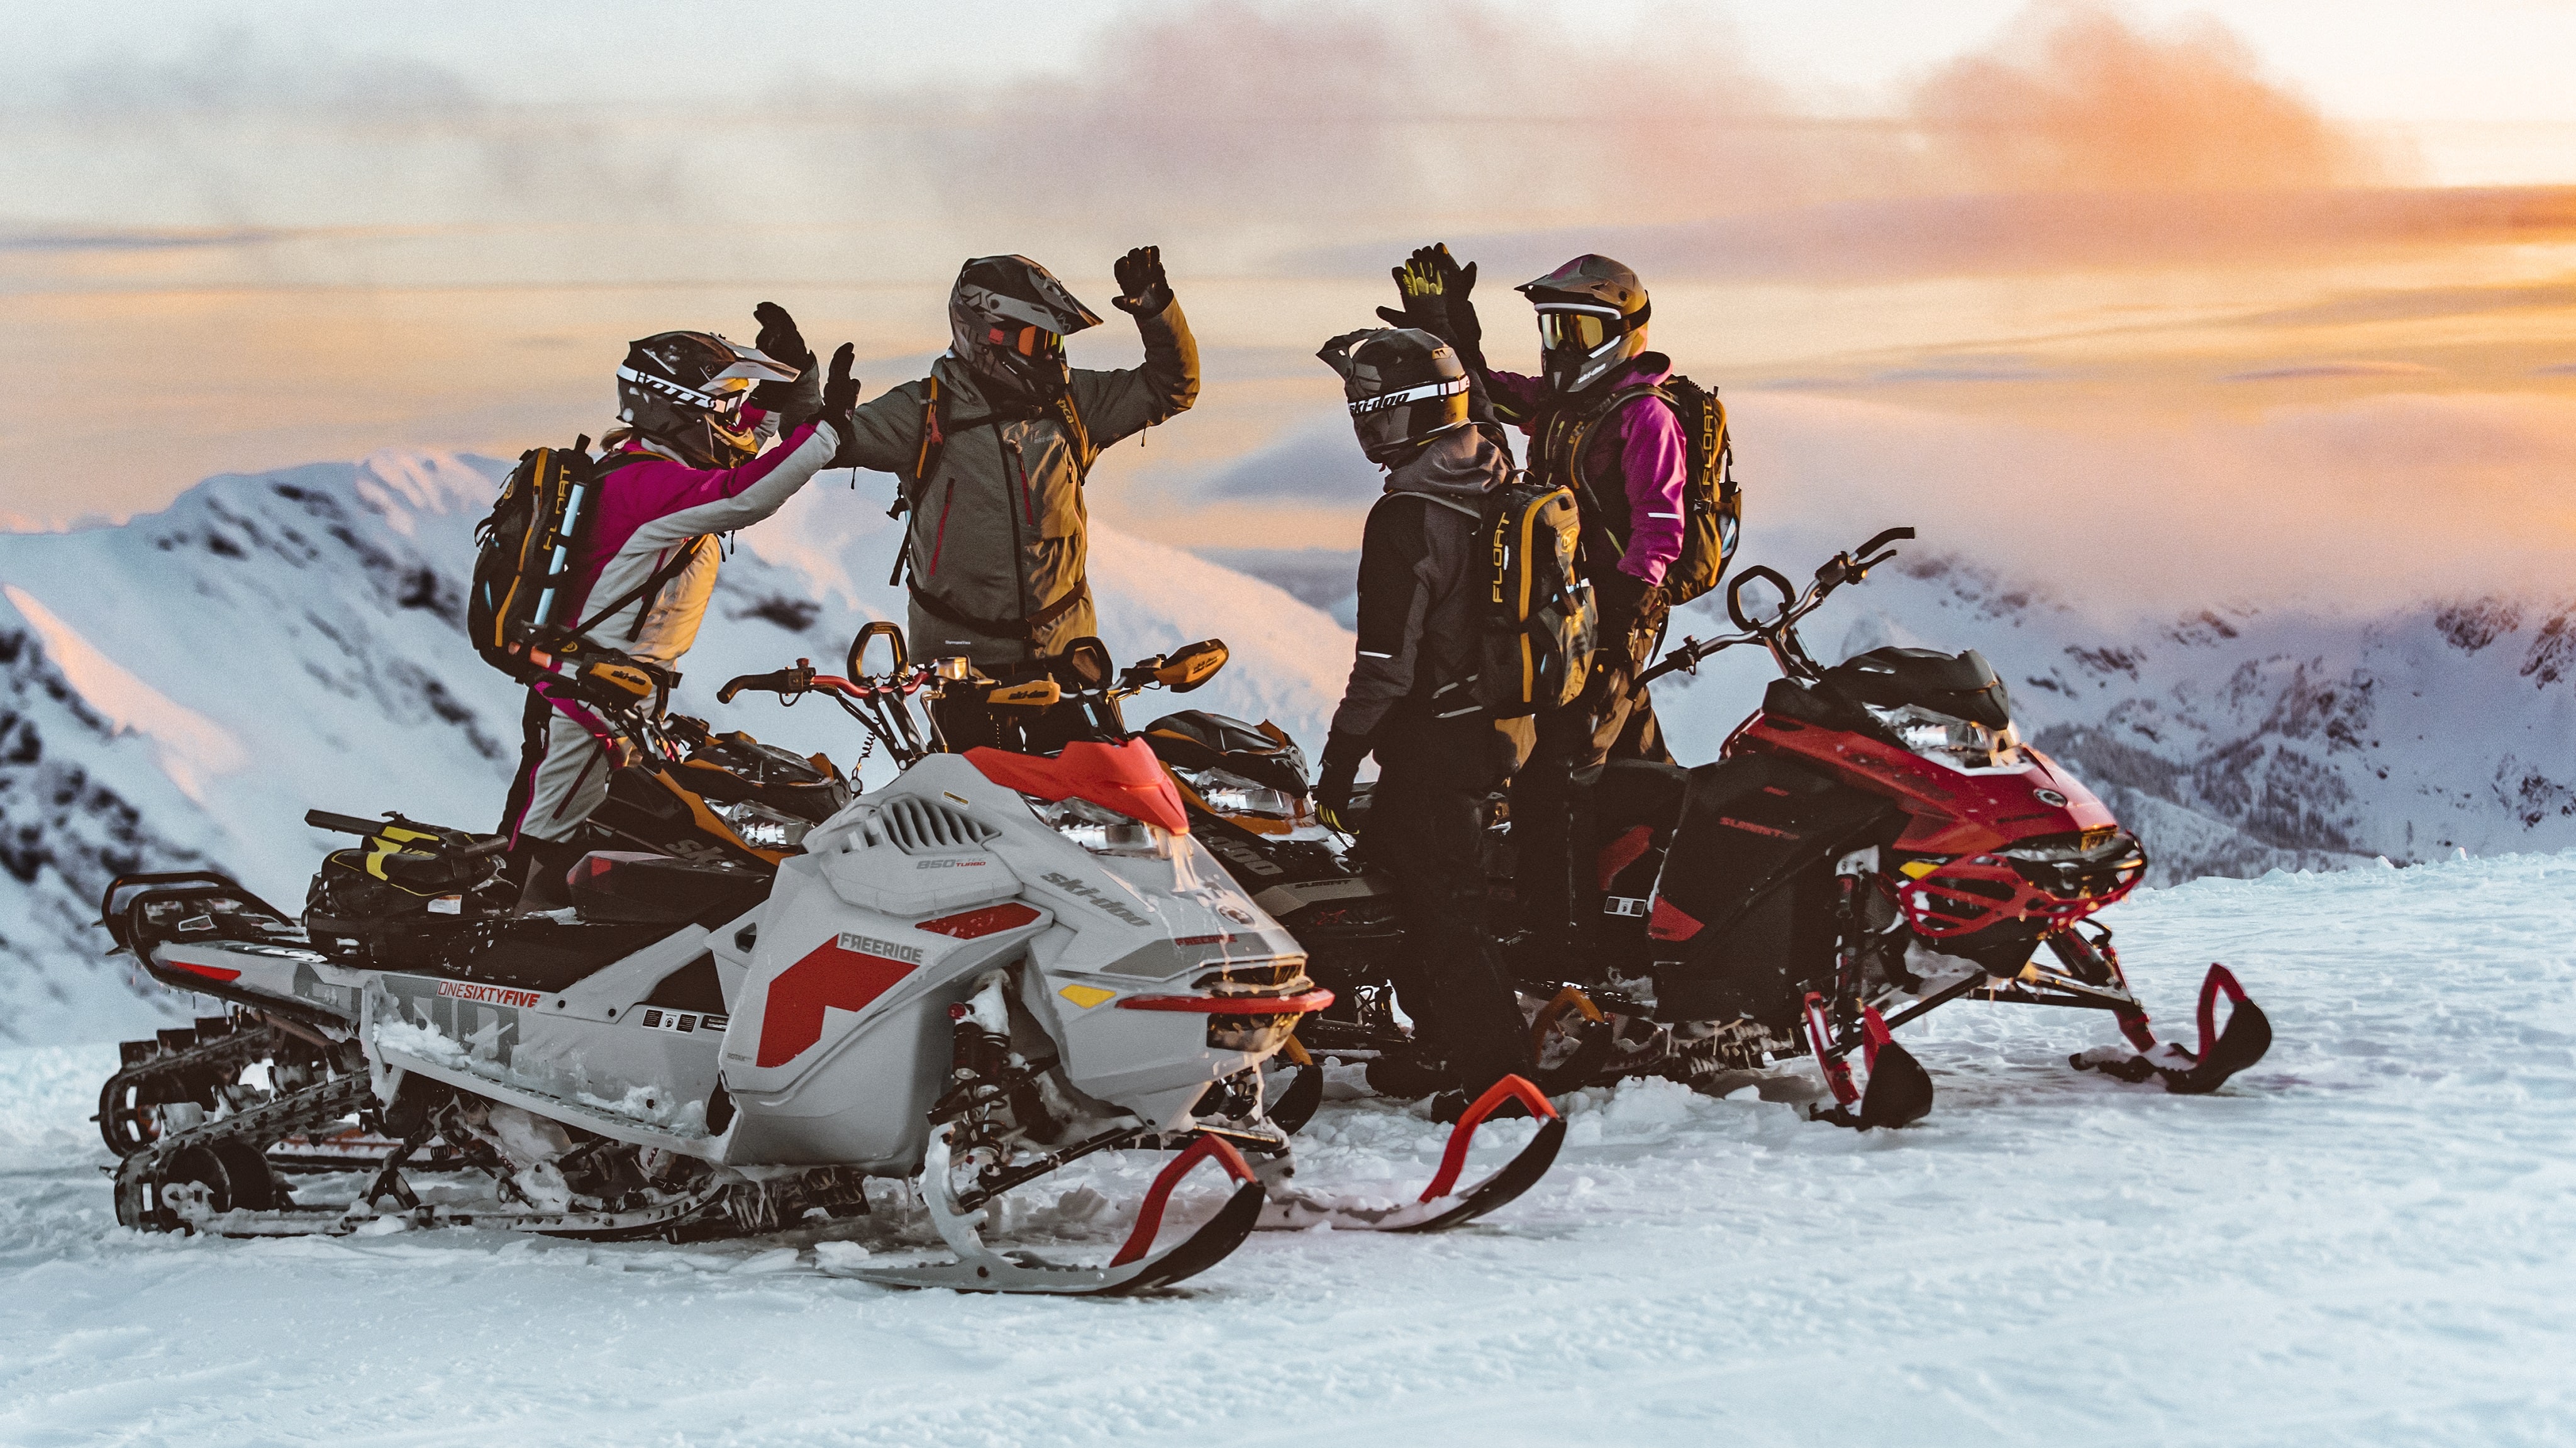 Keturi draugai musa pitakus prie Ski-doo sniego motociklu